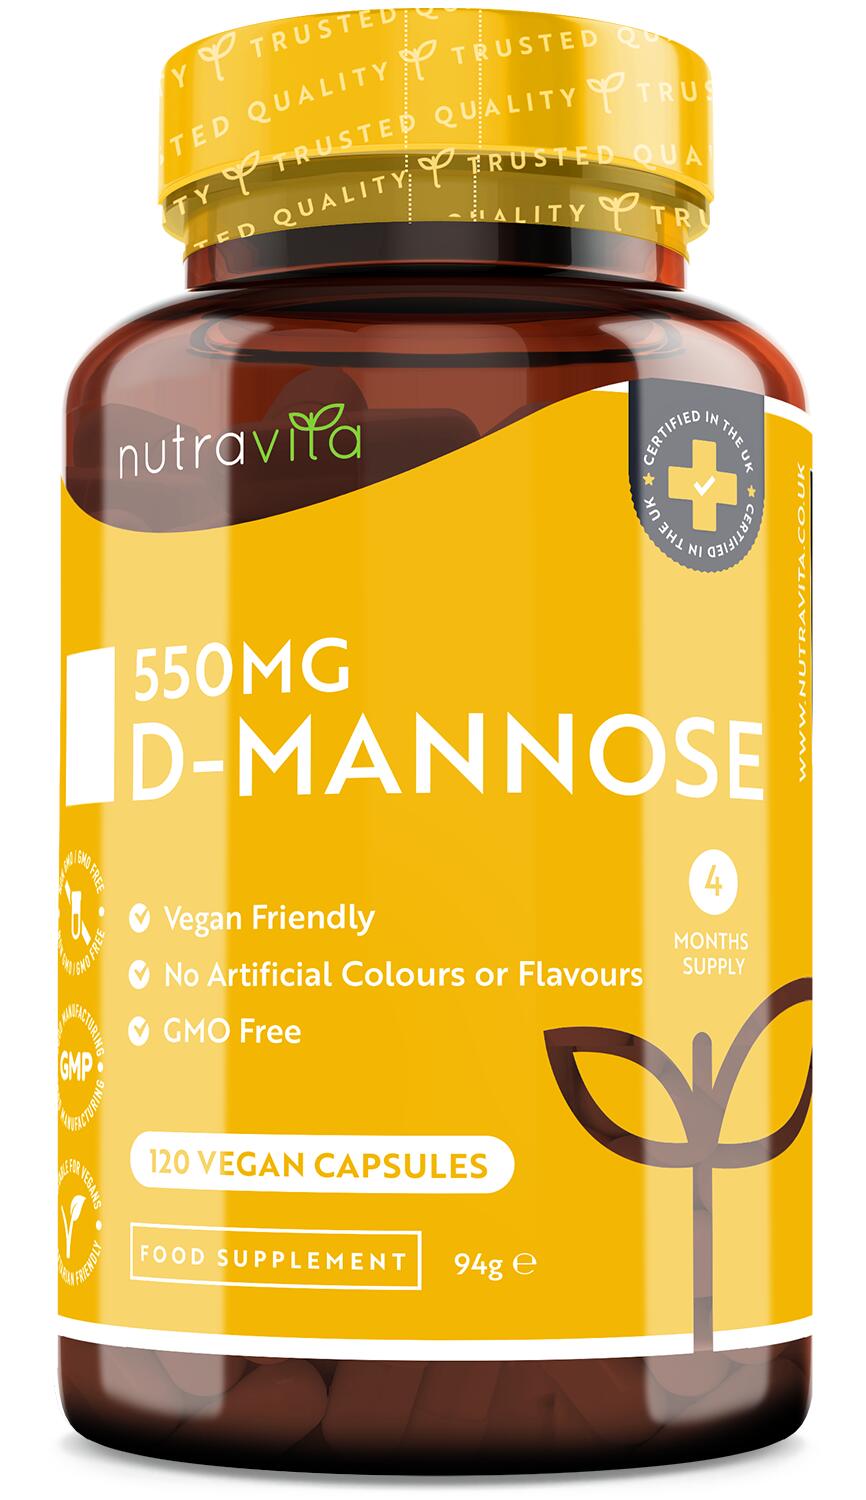 Nutravita D-Mannose 1650mg - 180 Vegan Capsules 1/6